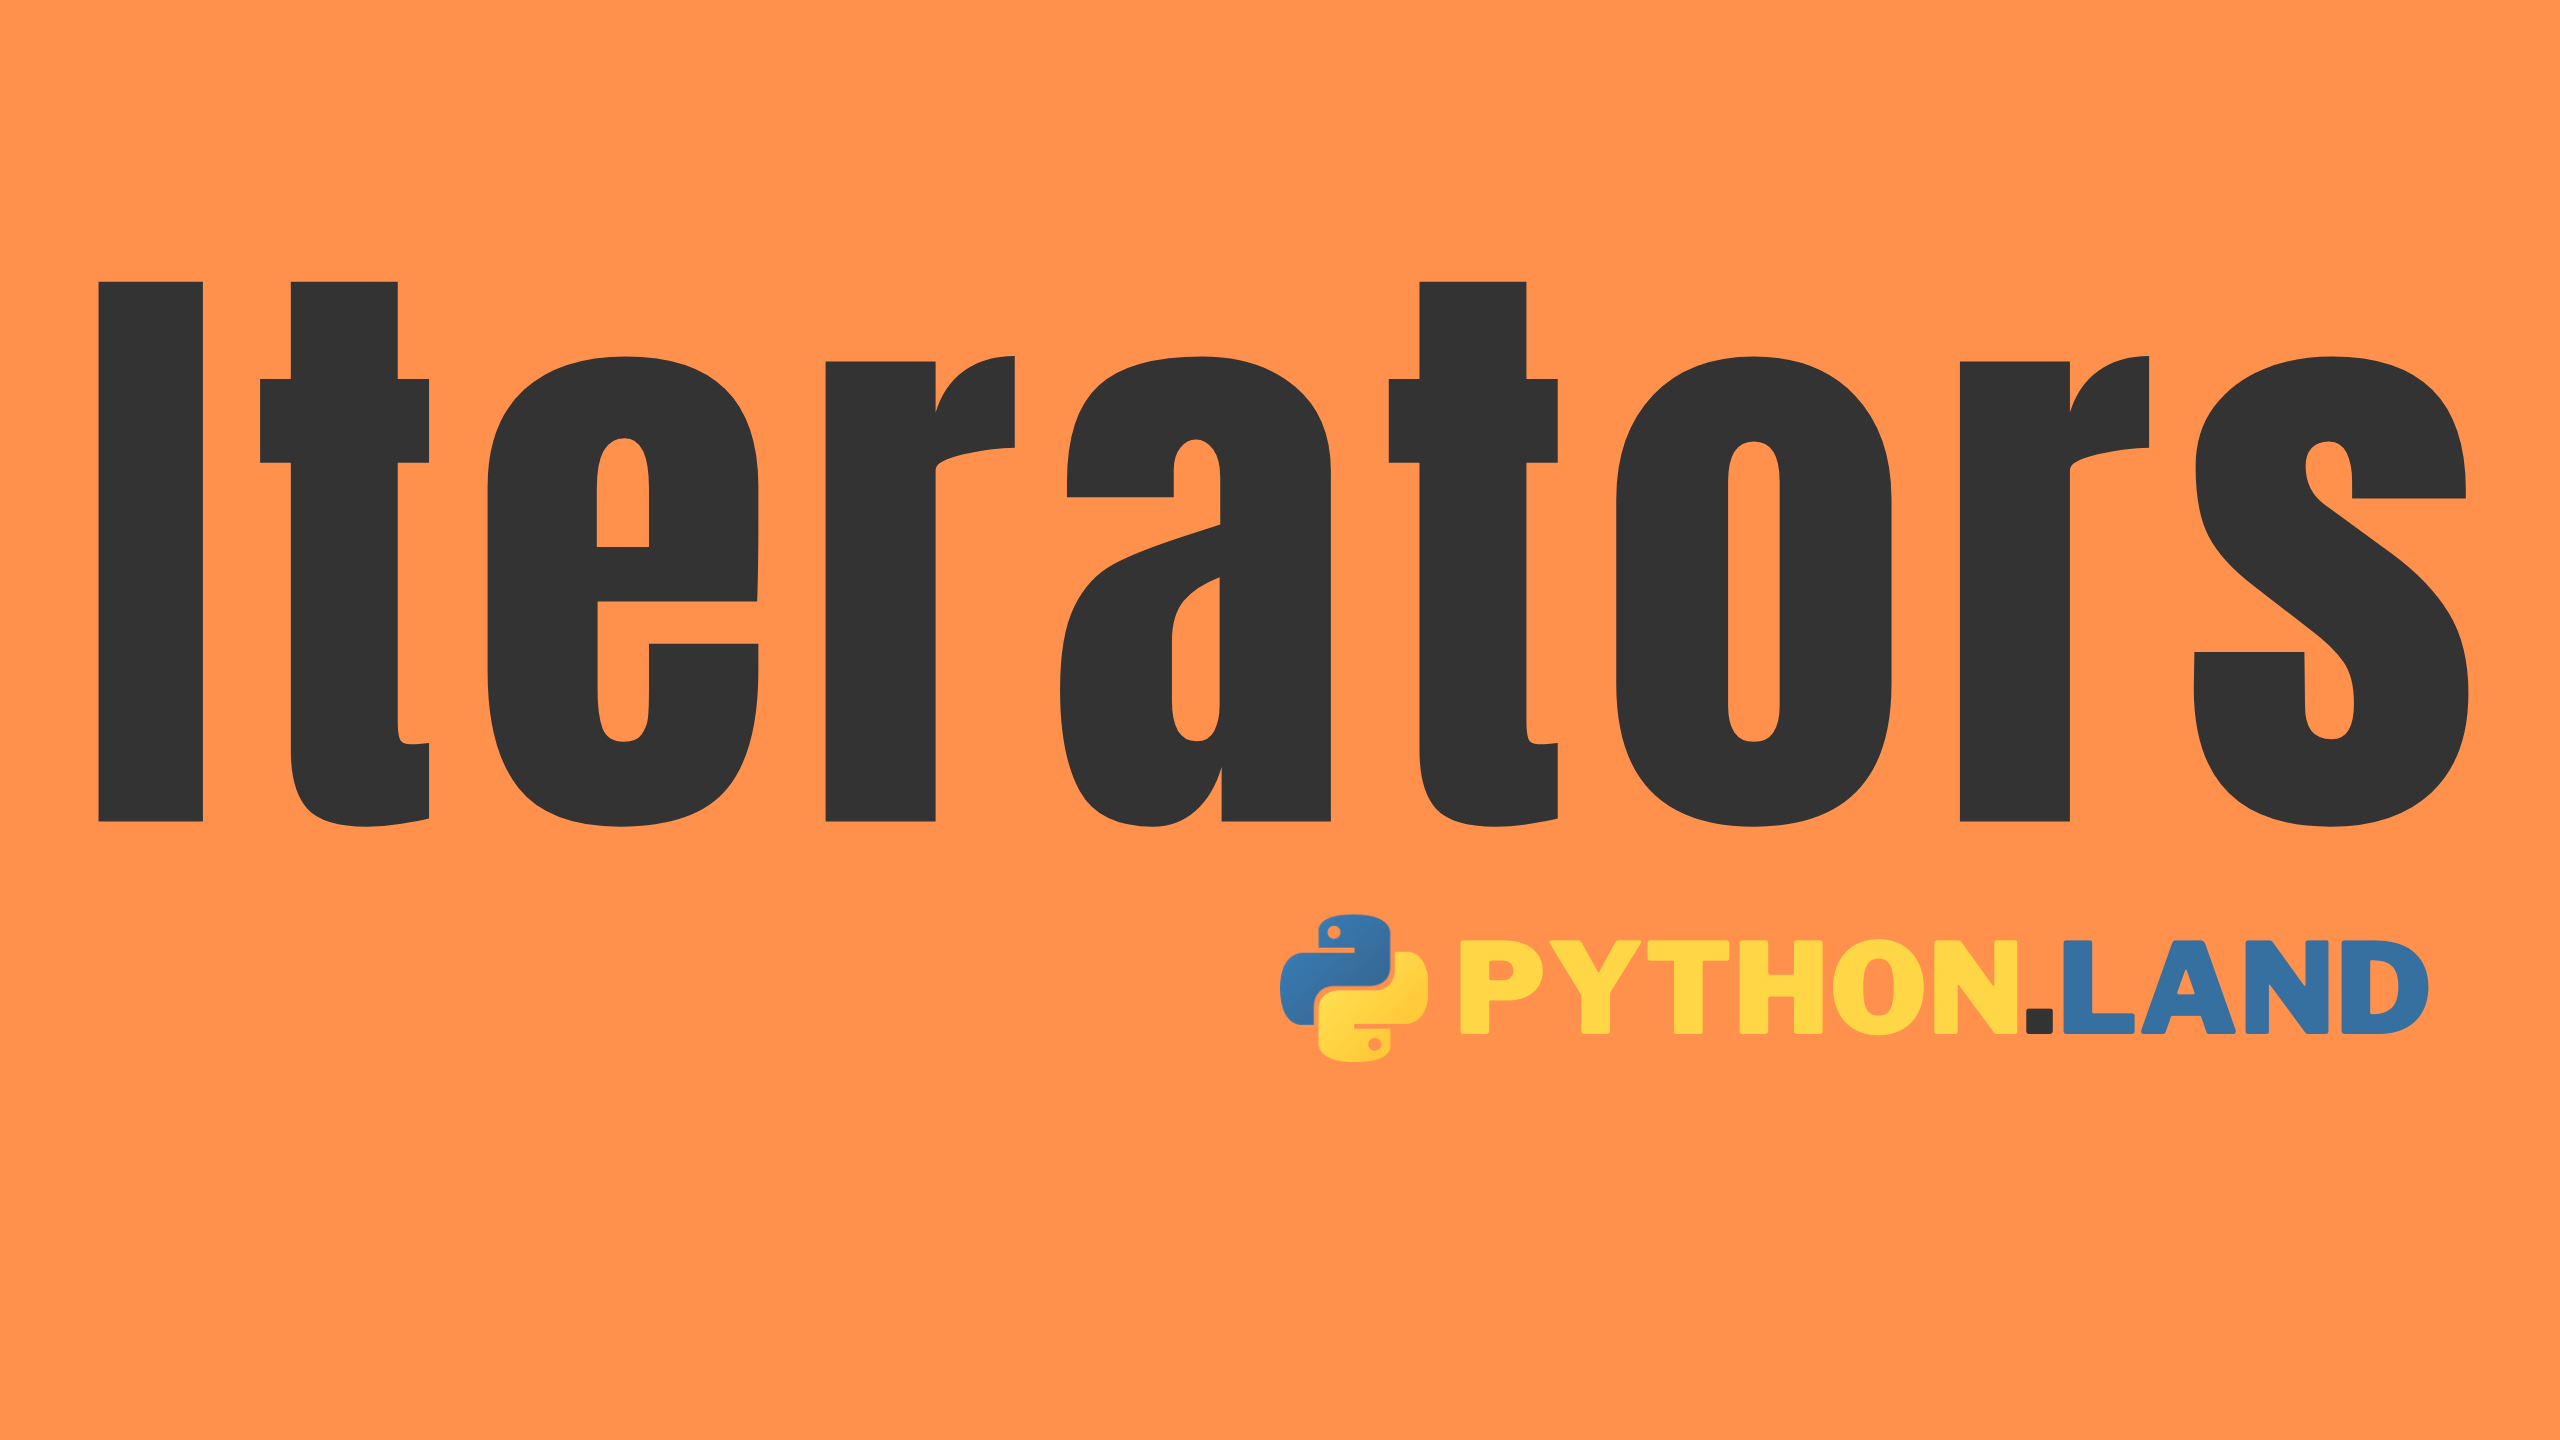 Python iterators